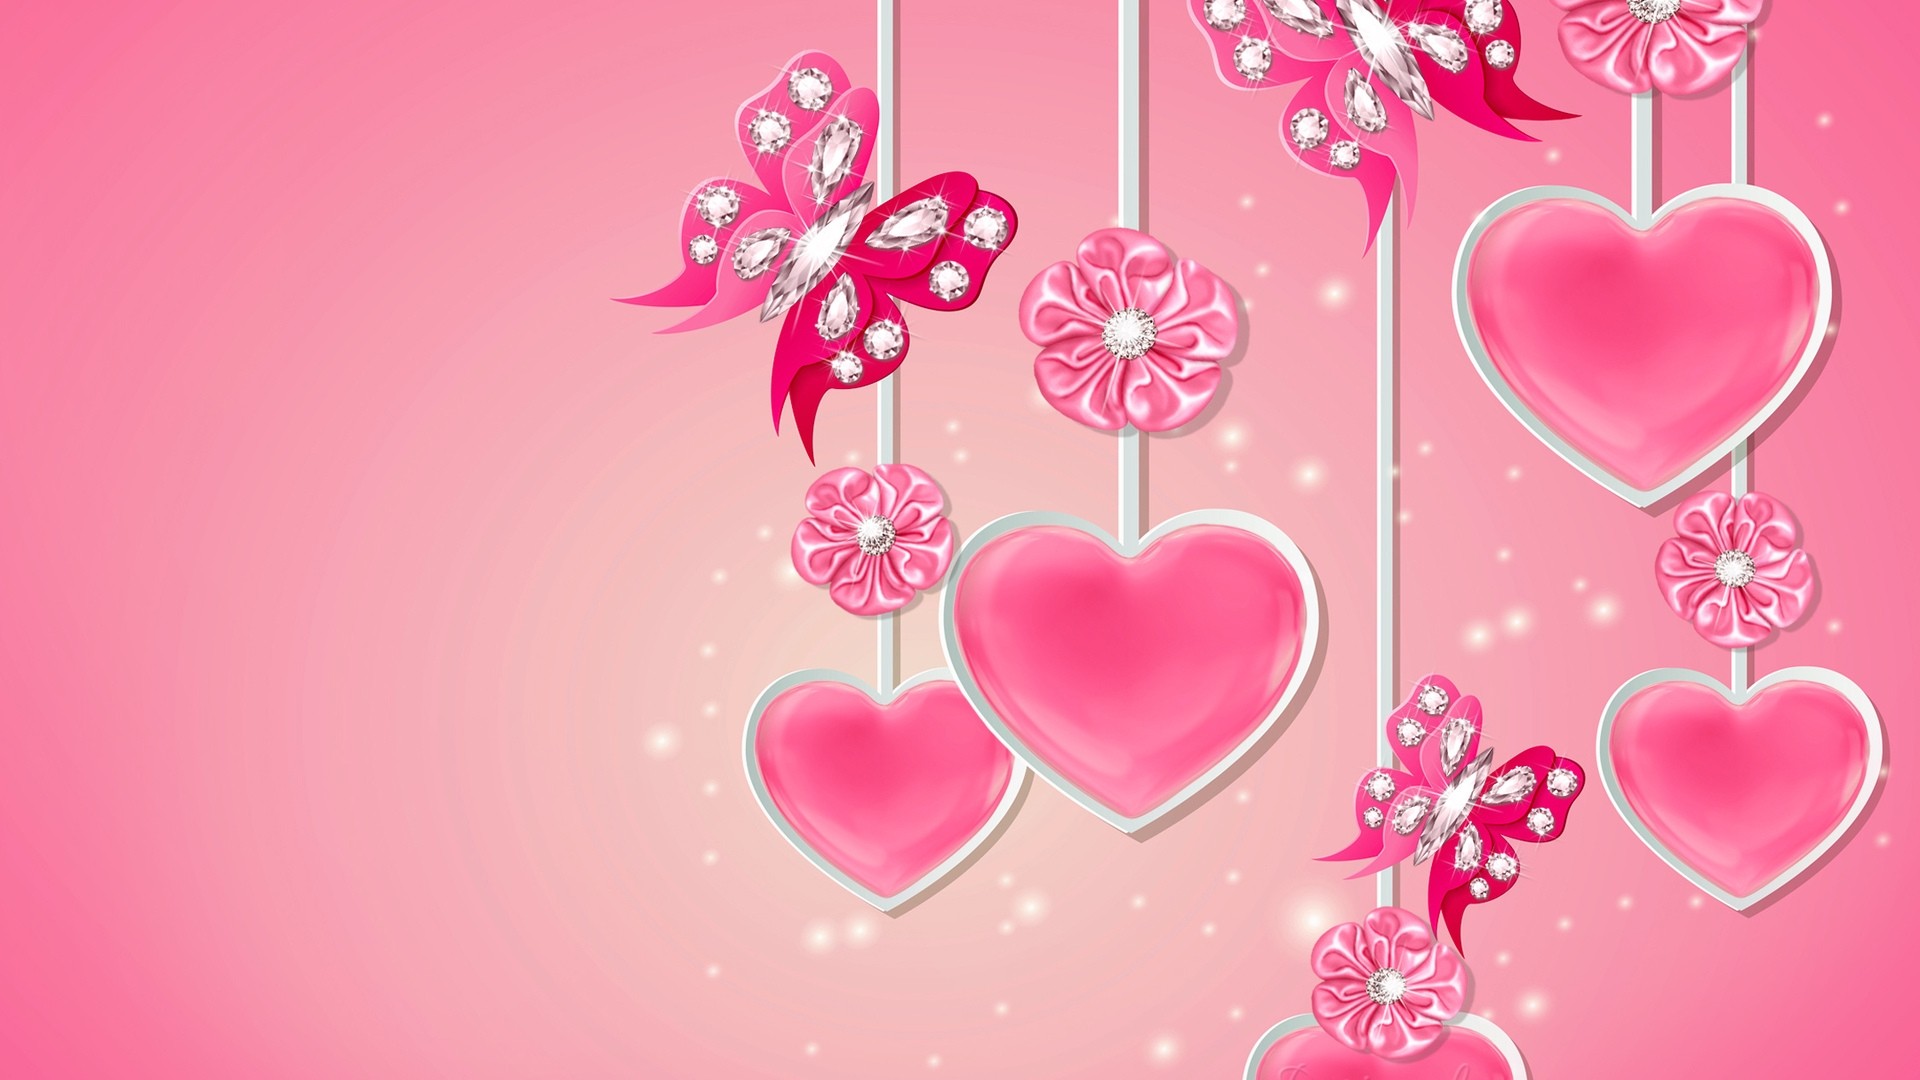 Pink Heart HD Wallpaper